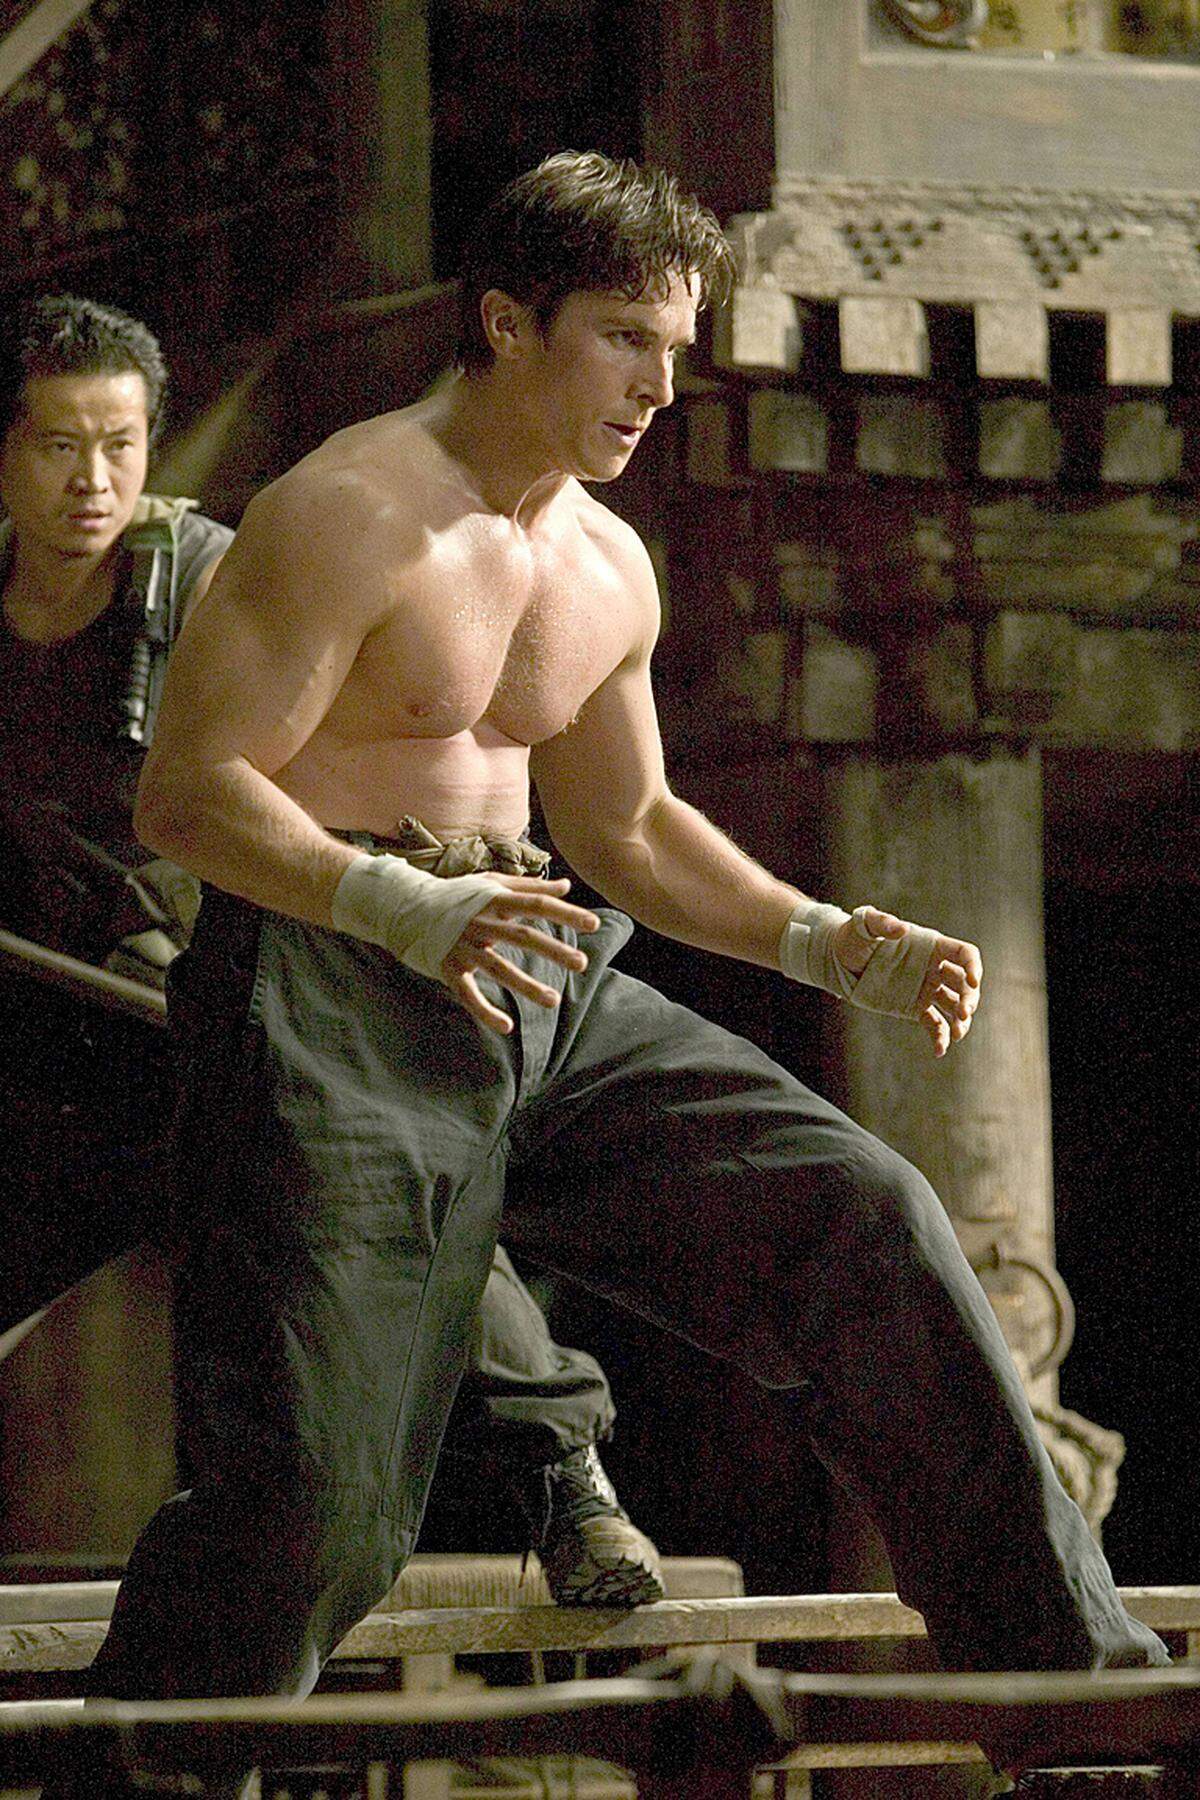 Für die Titelrolle in "Batman Begins" im Folgejahr nahm Bale wieder 45 Kilo zu - vor allem Muskelmasse. Für seine, mit einem Oscar belohnte, Darstellung eines cracksüchtigen Box-Managers in "The Fighter" nahm er 2008 erneut 13 Kilo ab.